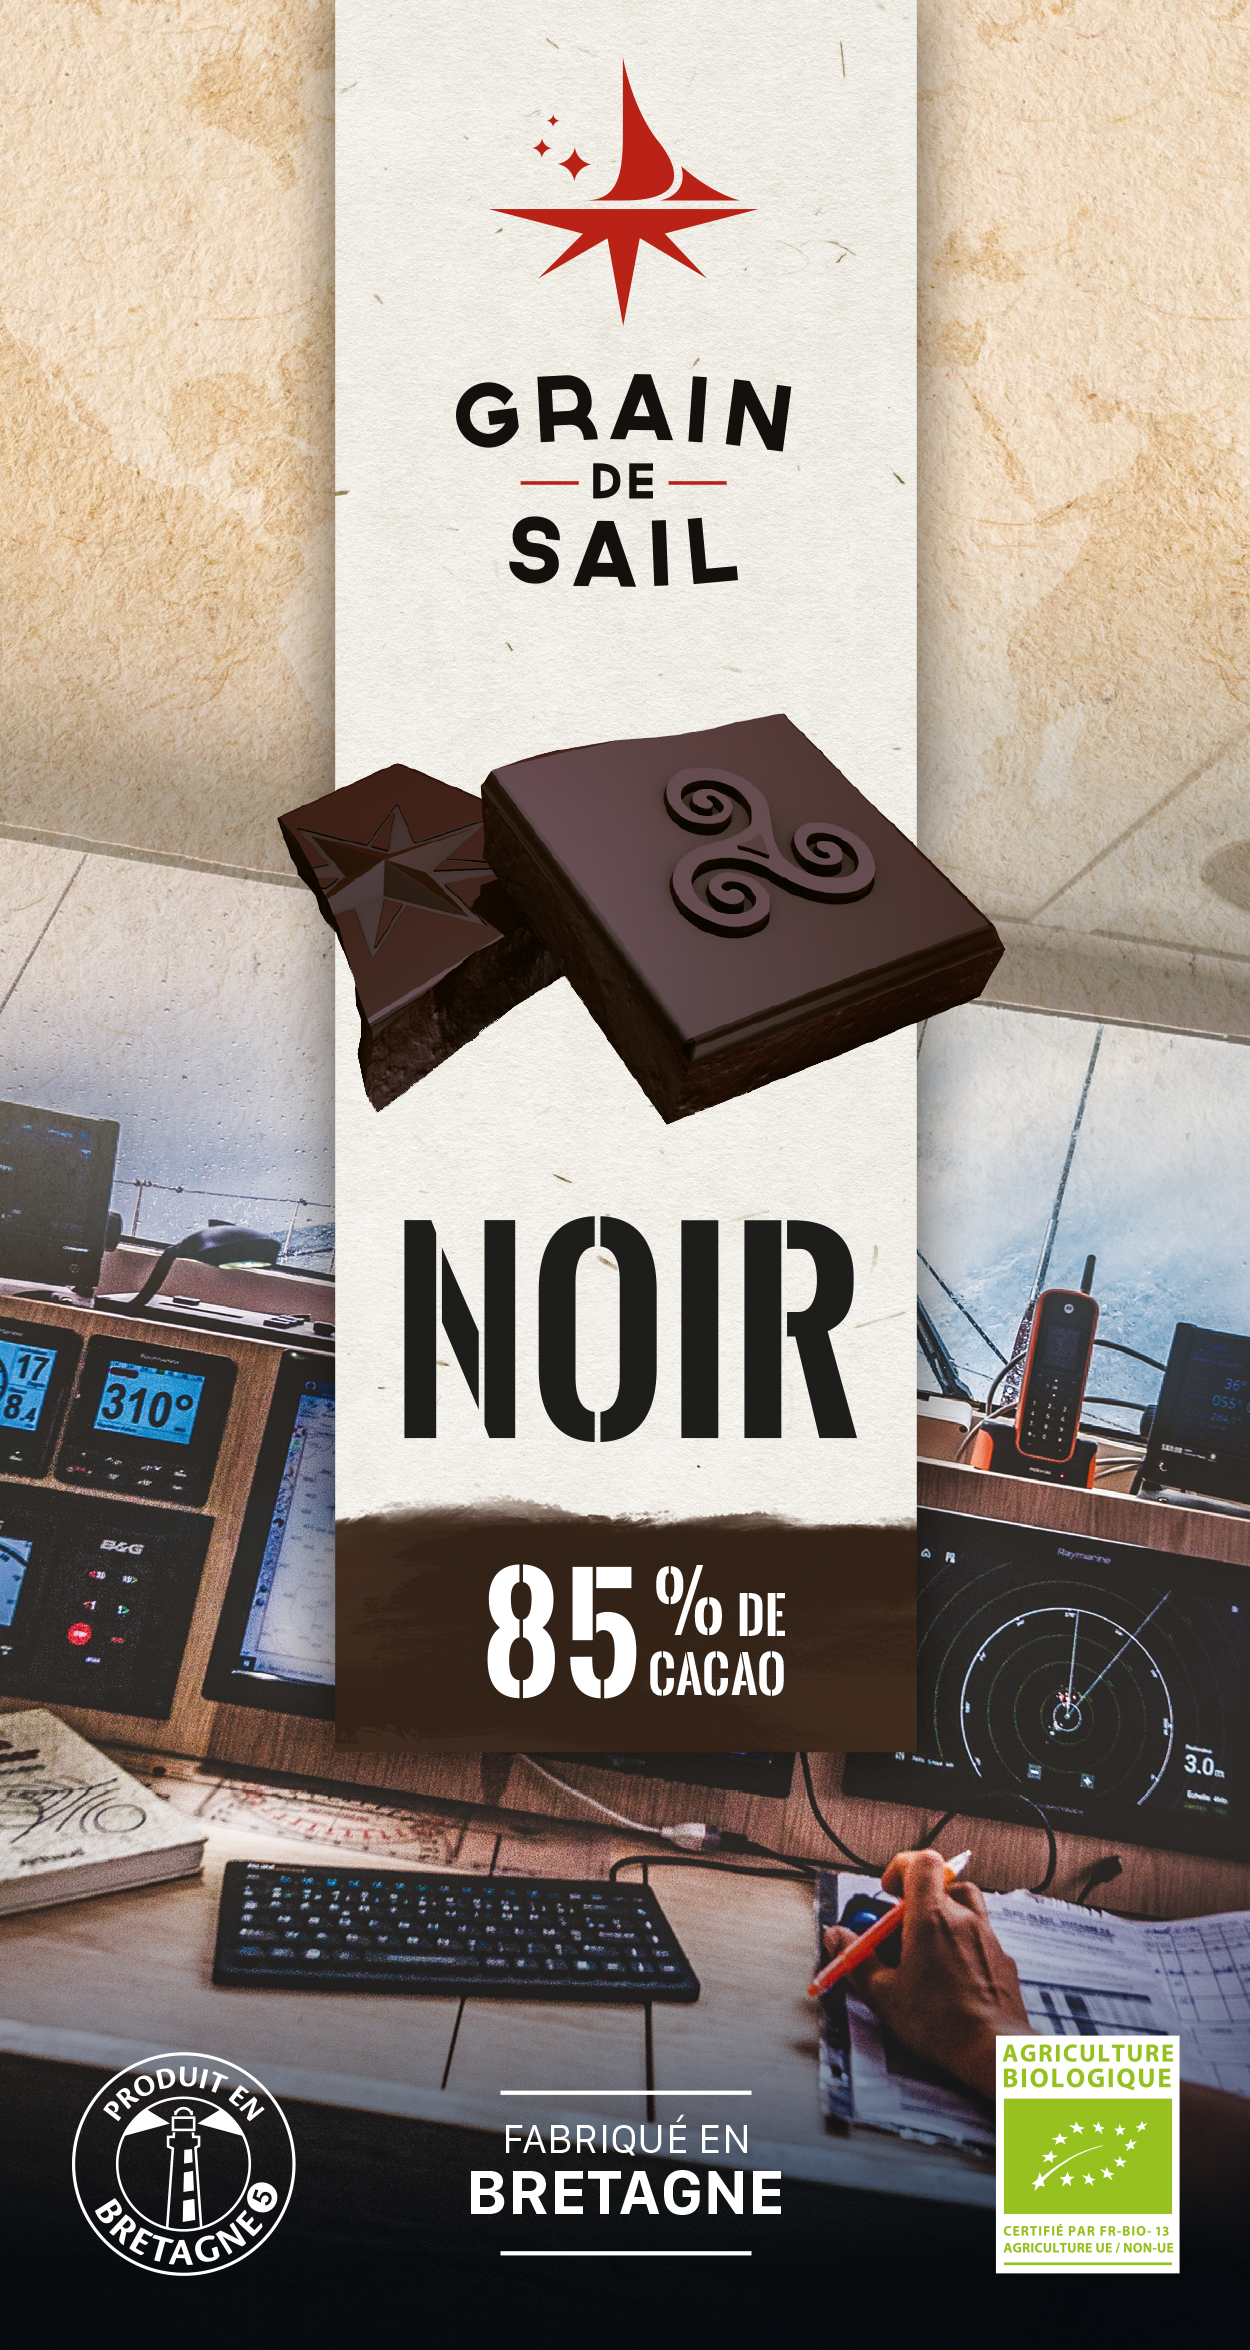 schokolade_noir_85_grain_de_sail